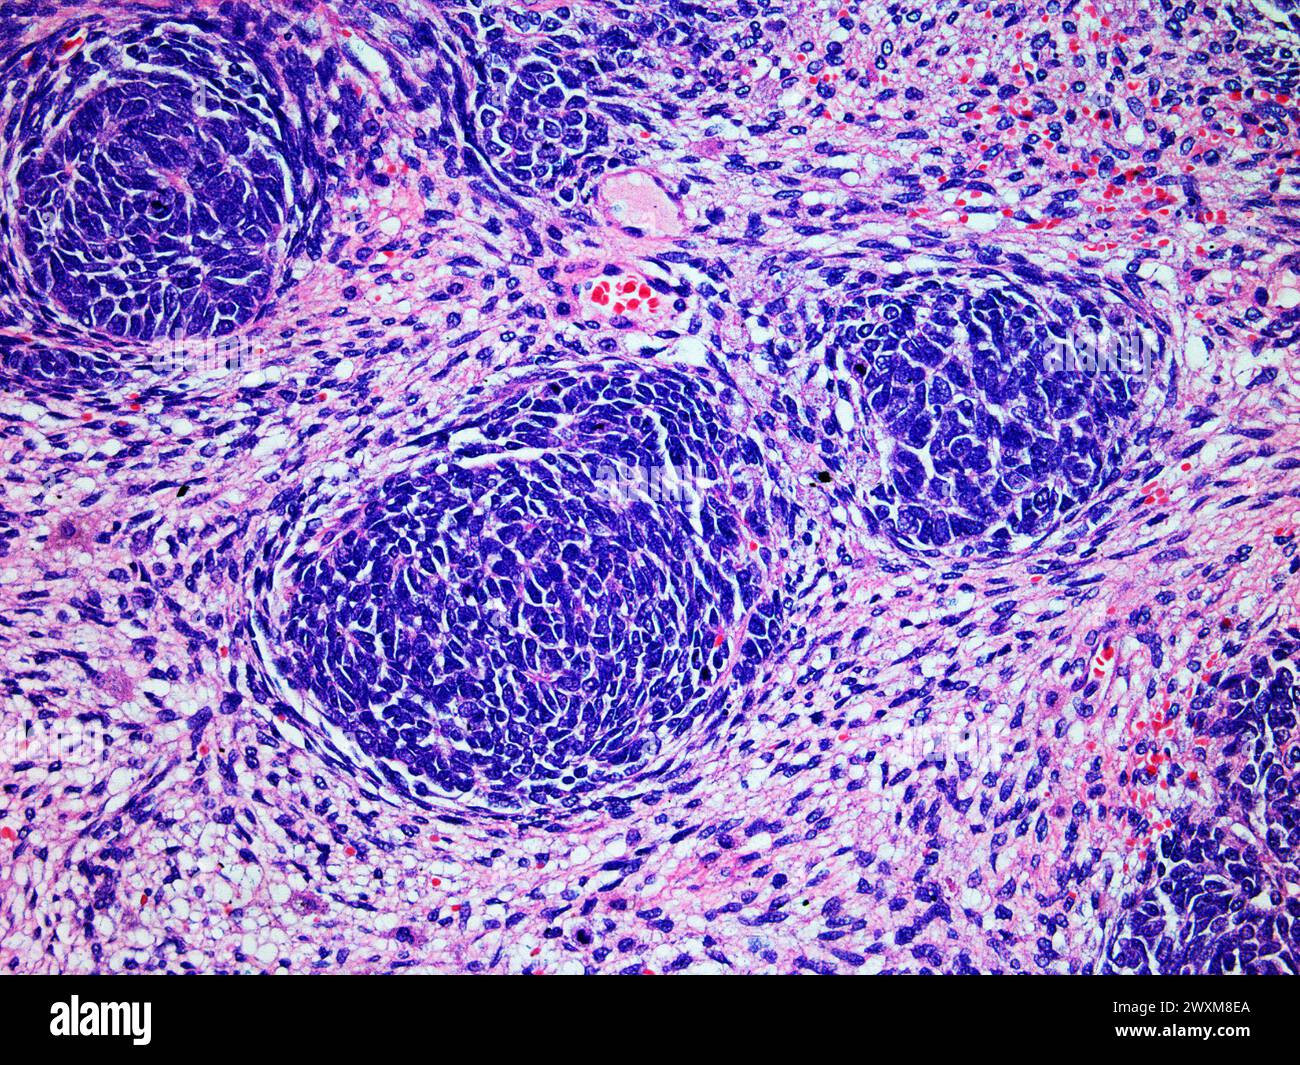 Immagine microscopica di un tumore di Wilms o nefroblastoma di un rene di bambini visualizzato a 200x ingrandimento con ematossilina ed eosina colorante uno dei mo Foto Stock